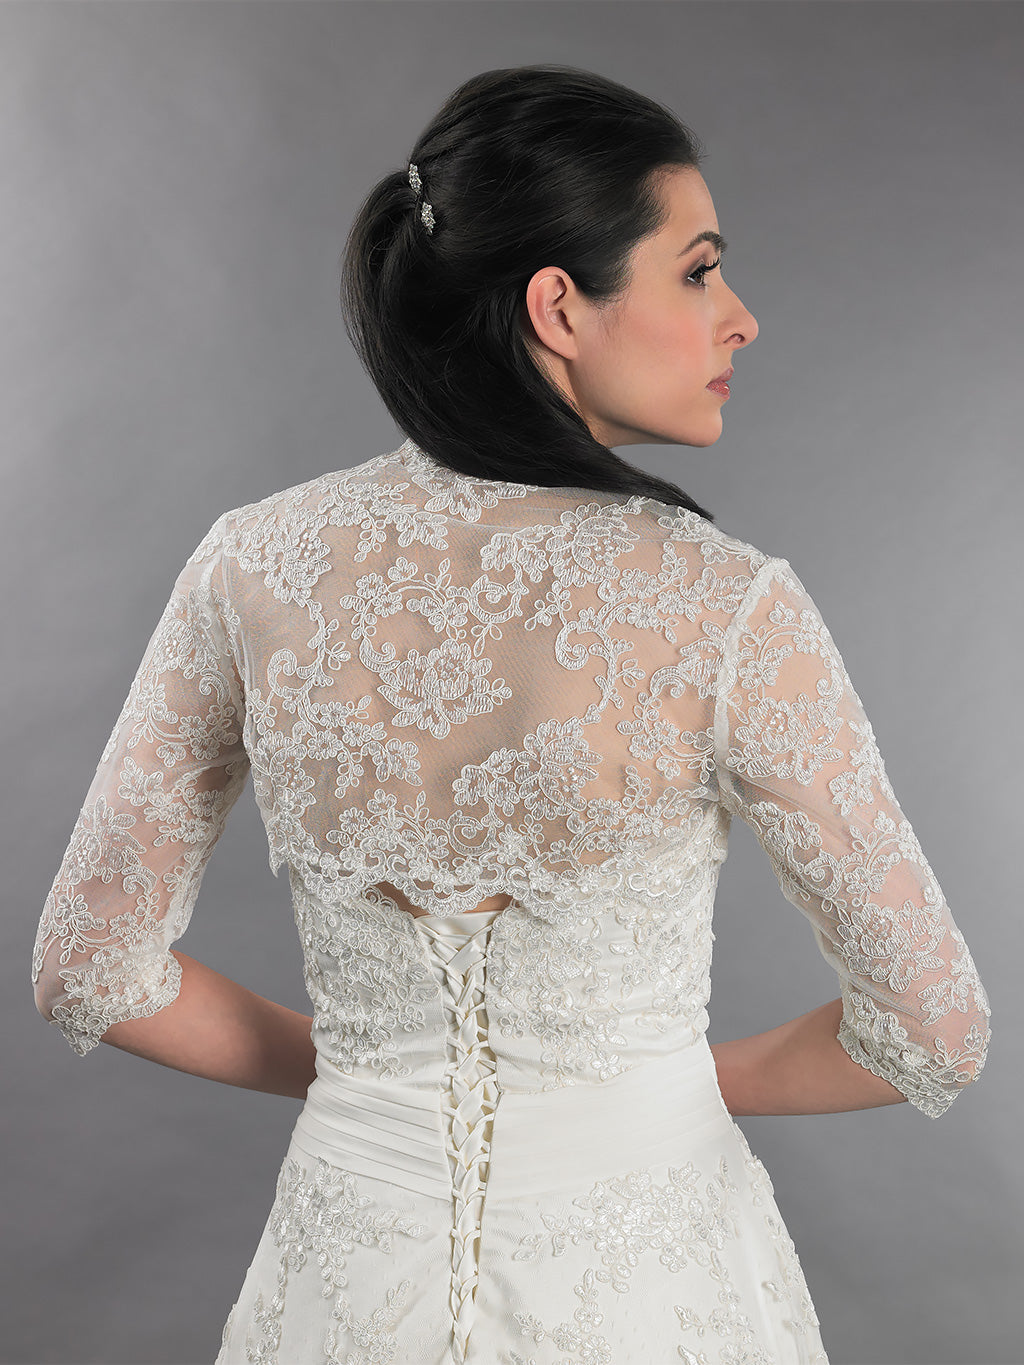 34 Sleeve Bridal Lace Wedding Bolero Jacket Lace080